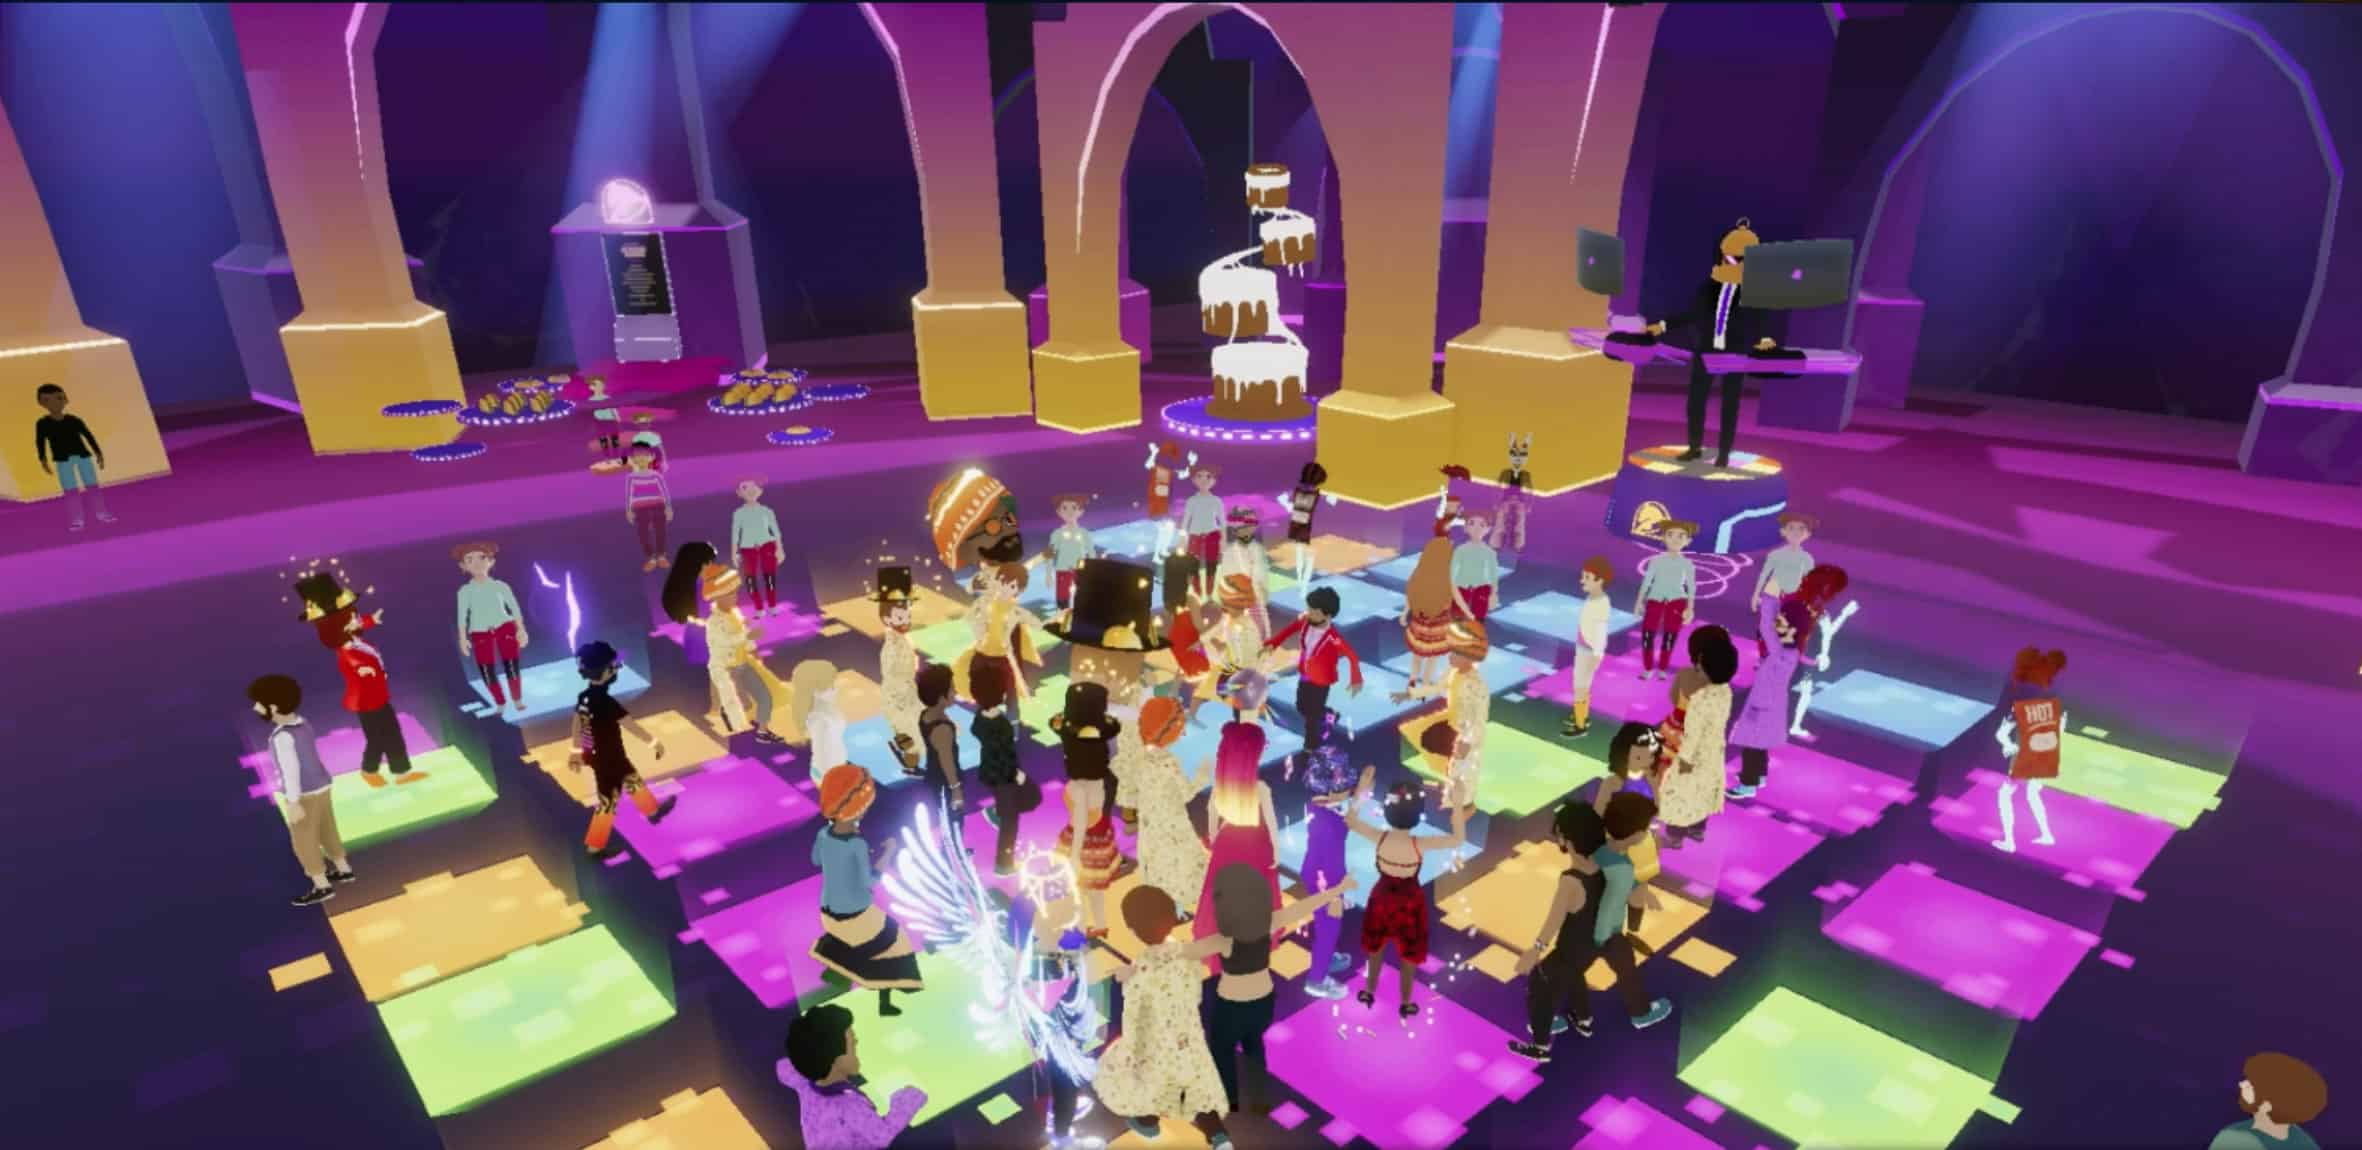 ساحة الرقص في حفل استقبال زفاف في الميتافيرس